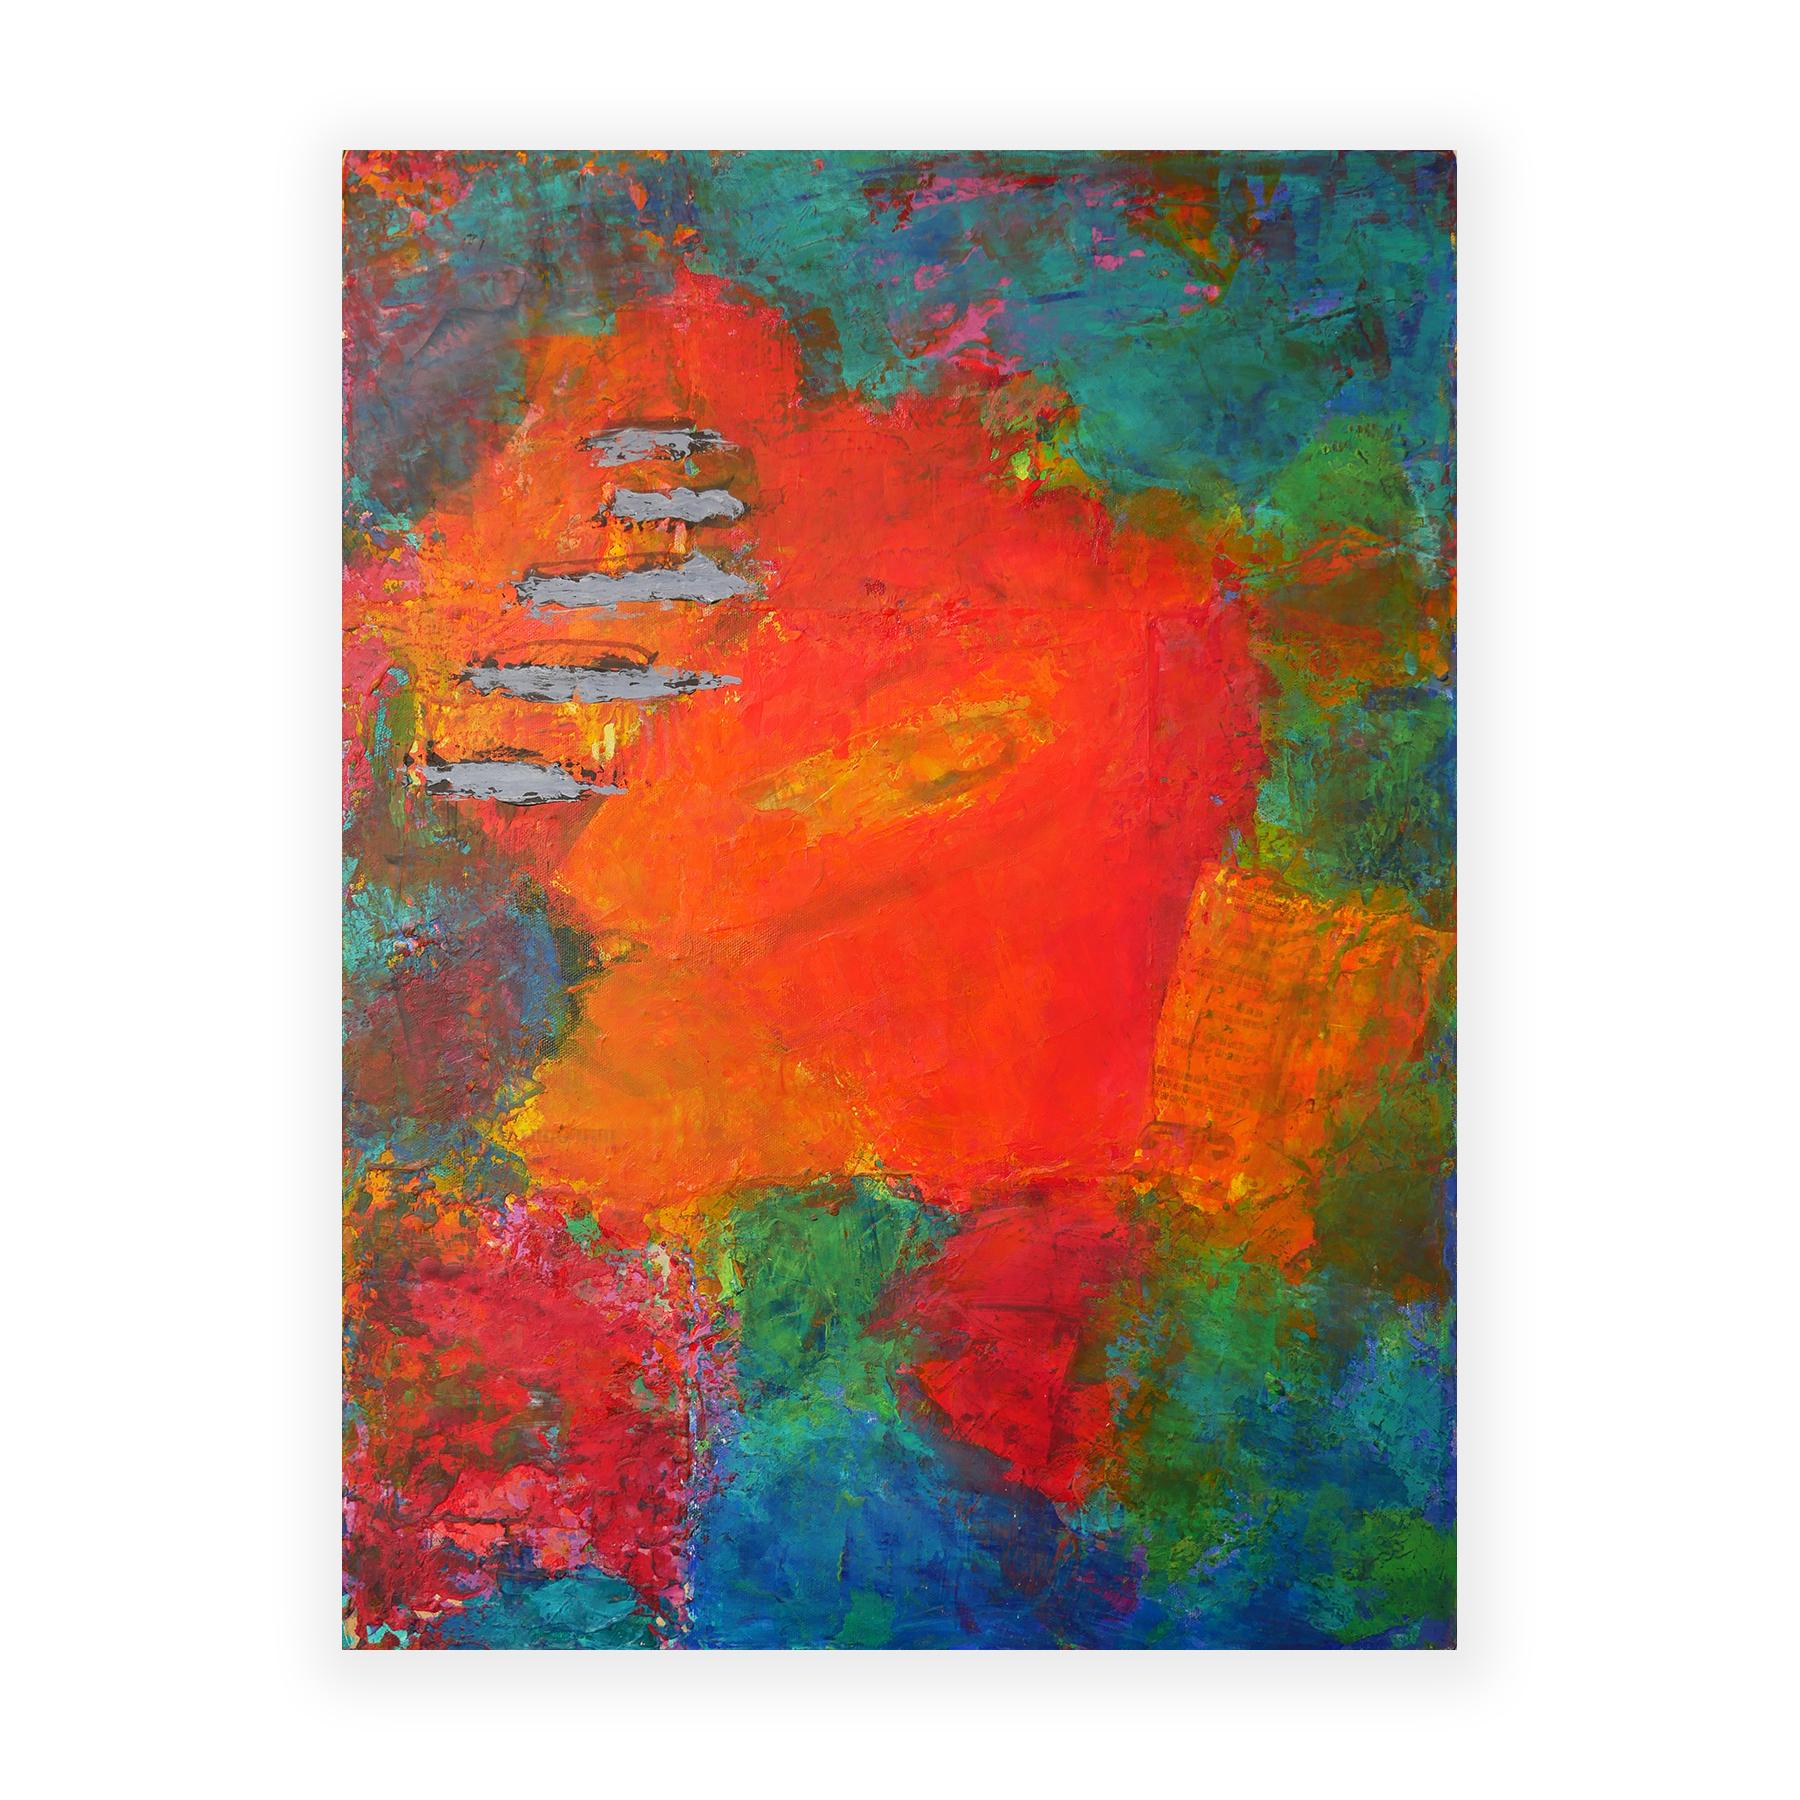 Peinture expressionniste abstraite rouge, bleue et verte Saturday Morning - Abstrait Mixed Media Art par Phyllis Flax